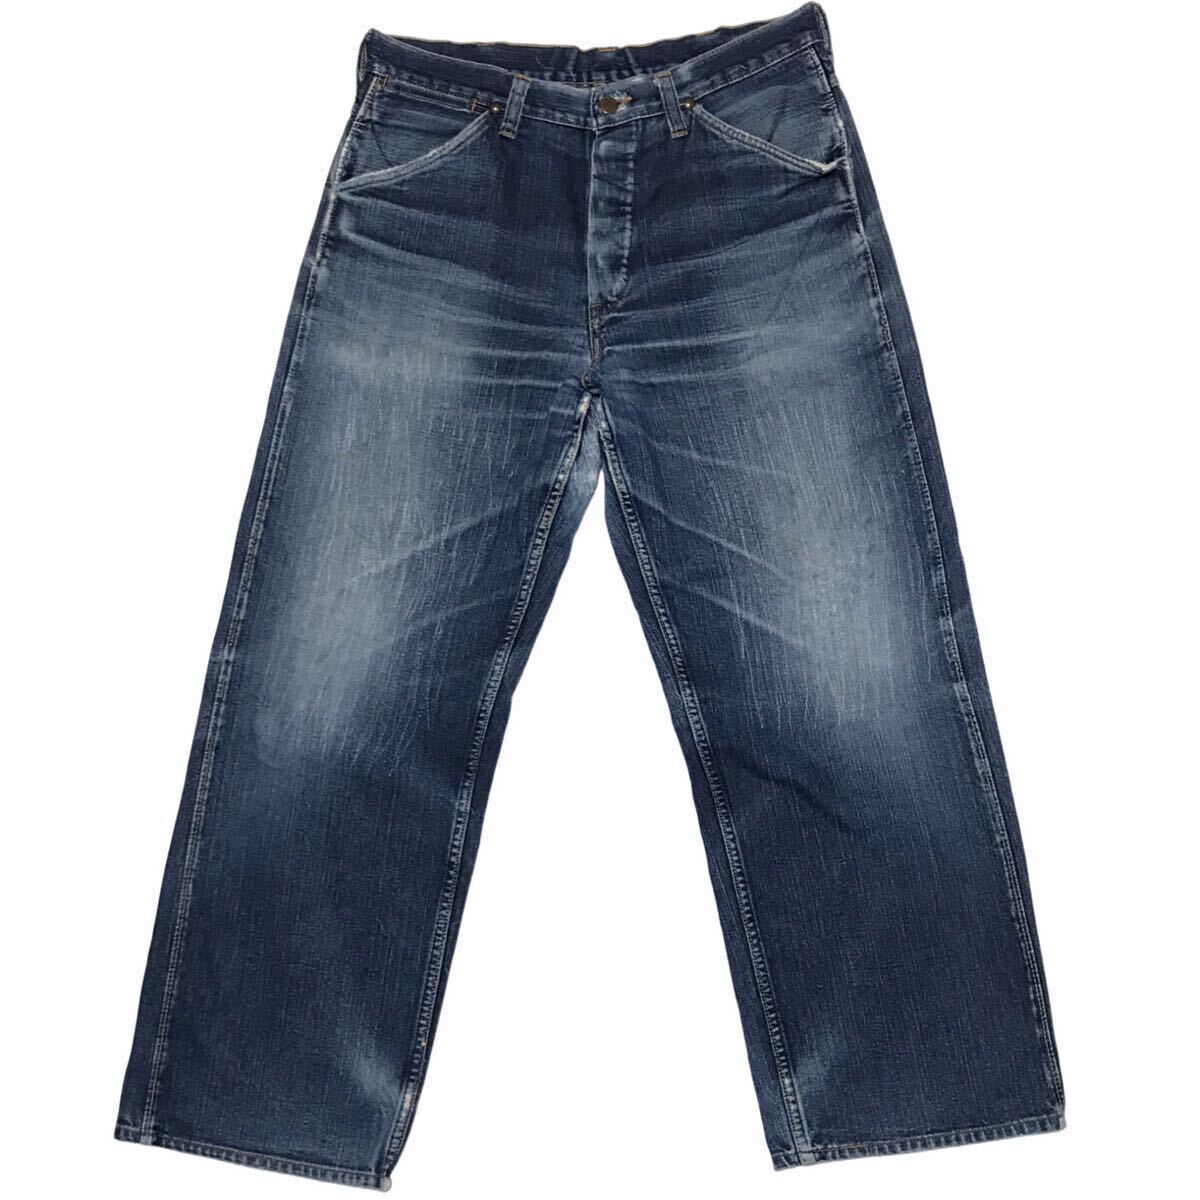 [90s] старый SUGAR CANE первый период 11MW Sugar Cane Wrangler модель Vintage копия джинсы W84. цвет .. Denim брюки Восток enta-